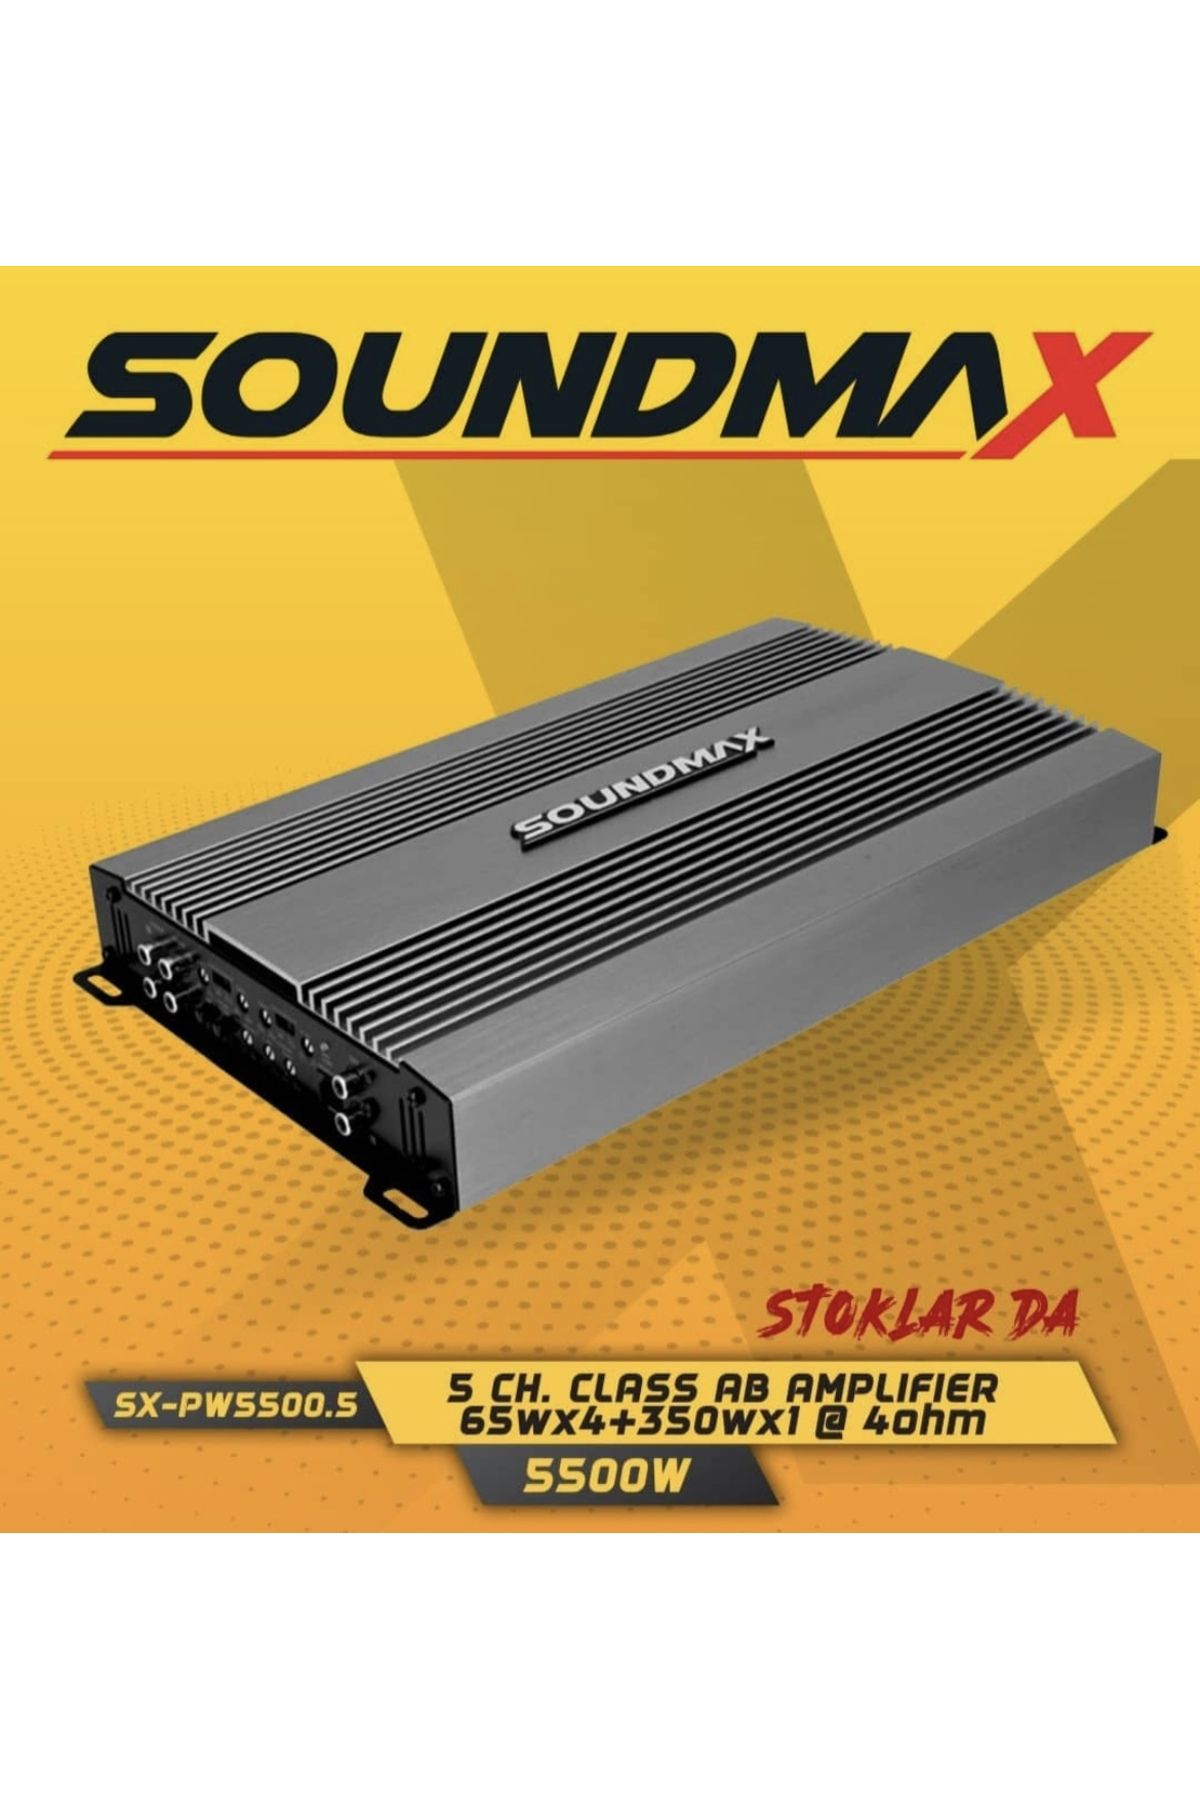 Soundmax Sx-pw5500.5 5500wat Oto Profesyonel Anfi Amplifaktör Bas Kontrol Aparatlı